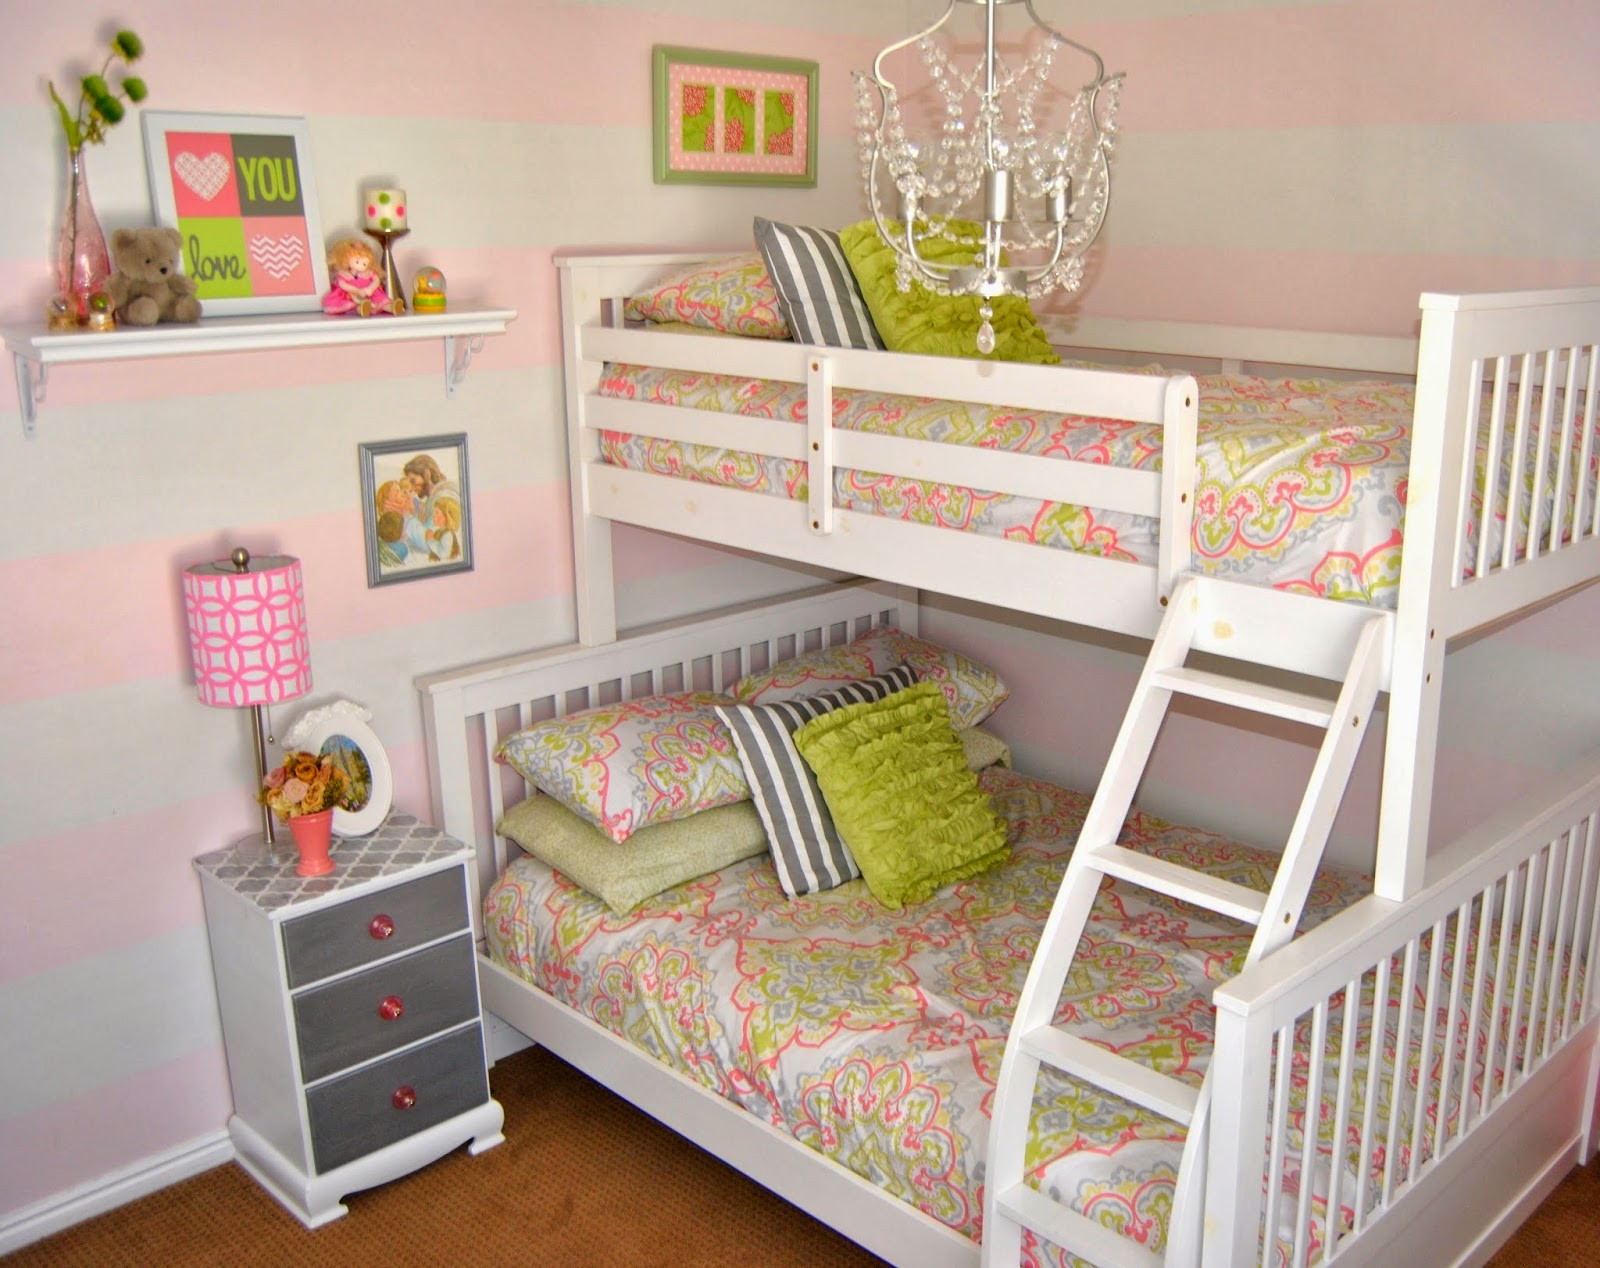 Bunk Bed Girl Bedroom Ideas
 Studio 7 Interior Design Room Reveal Little Girl s Bedroom